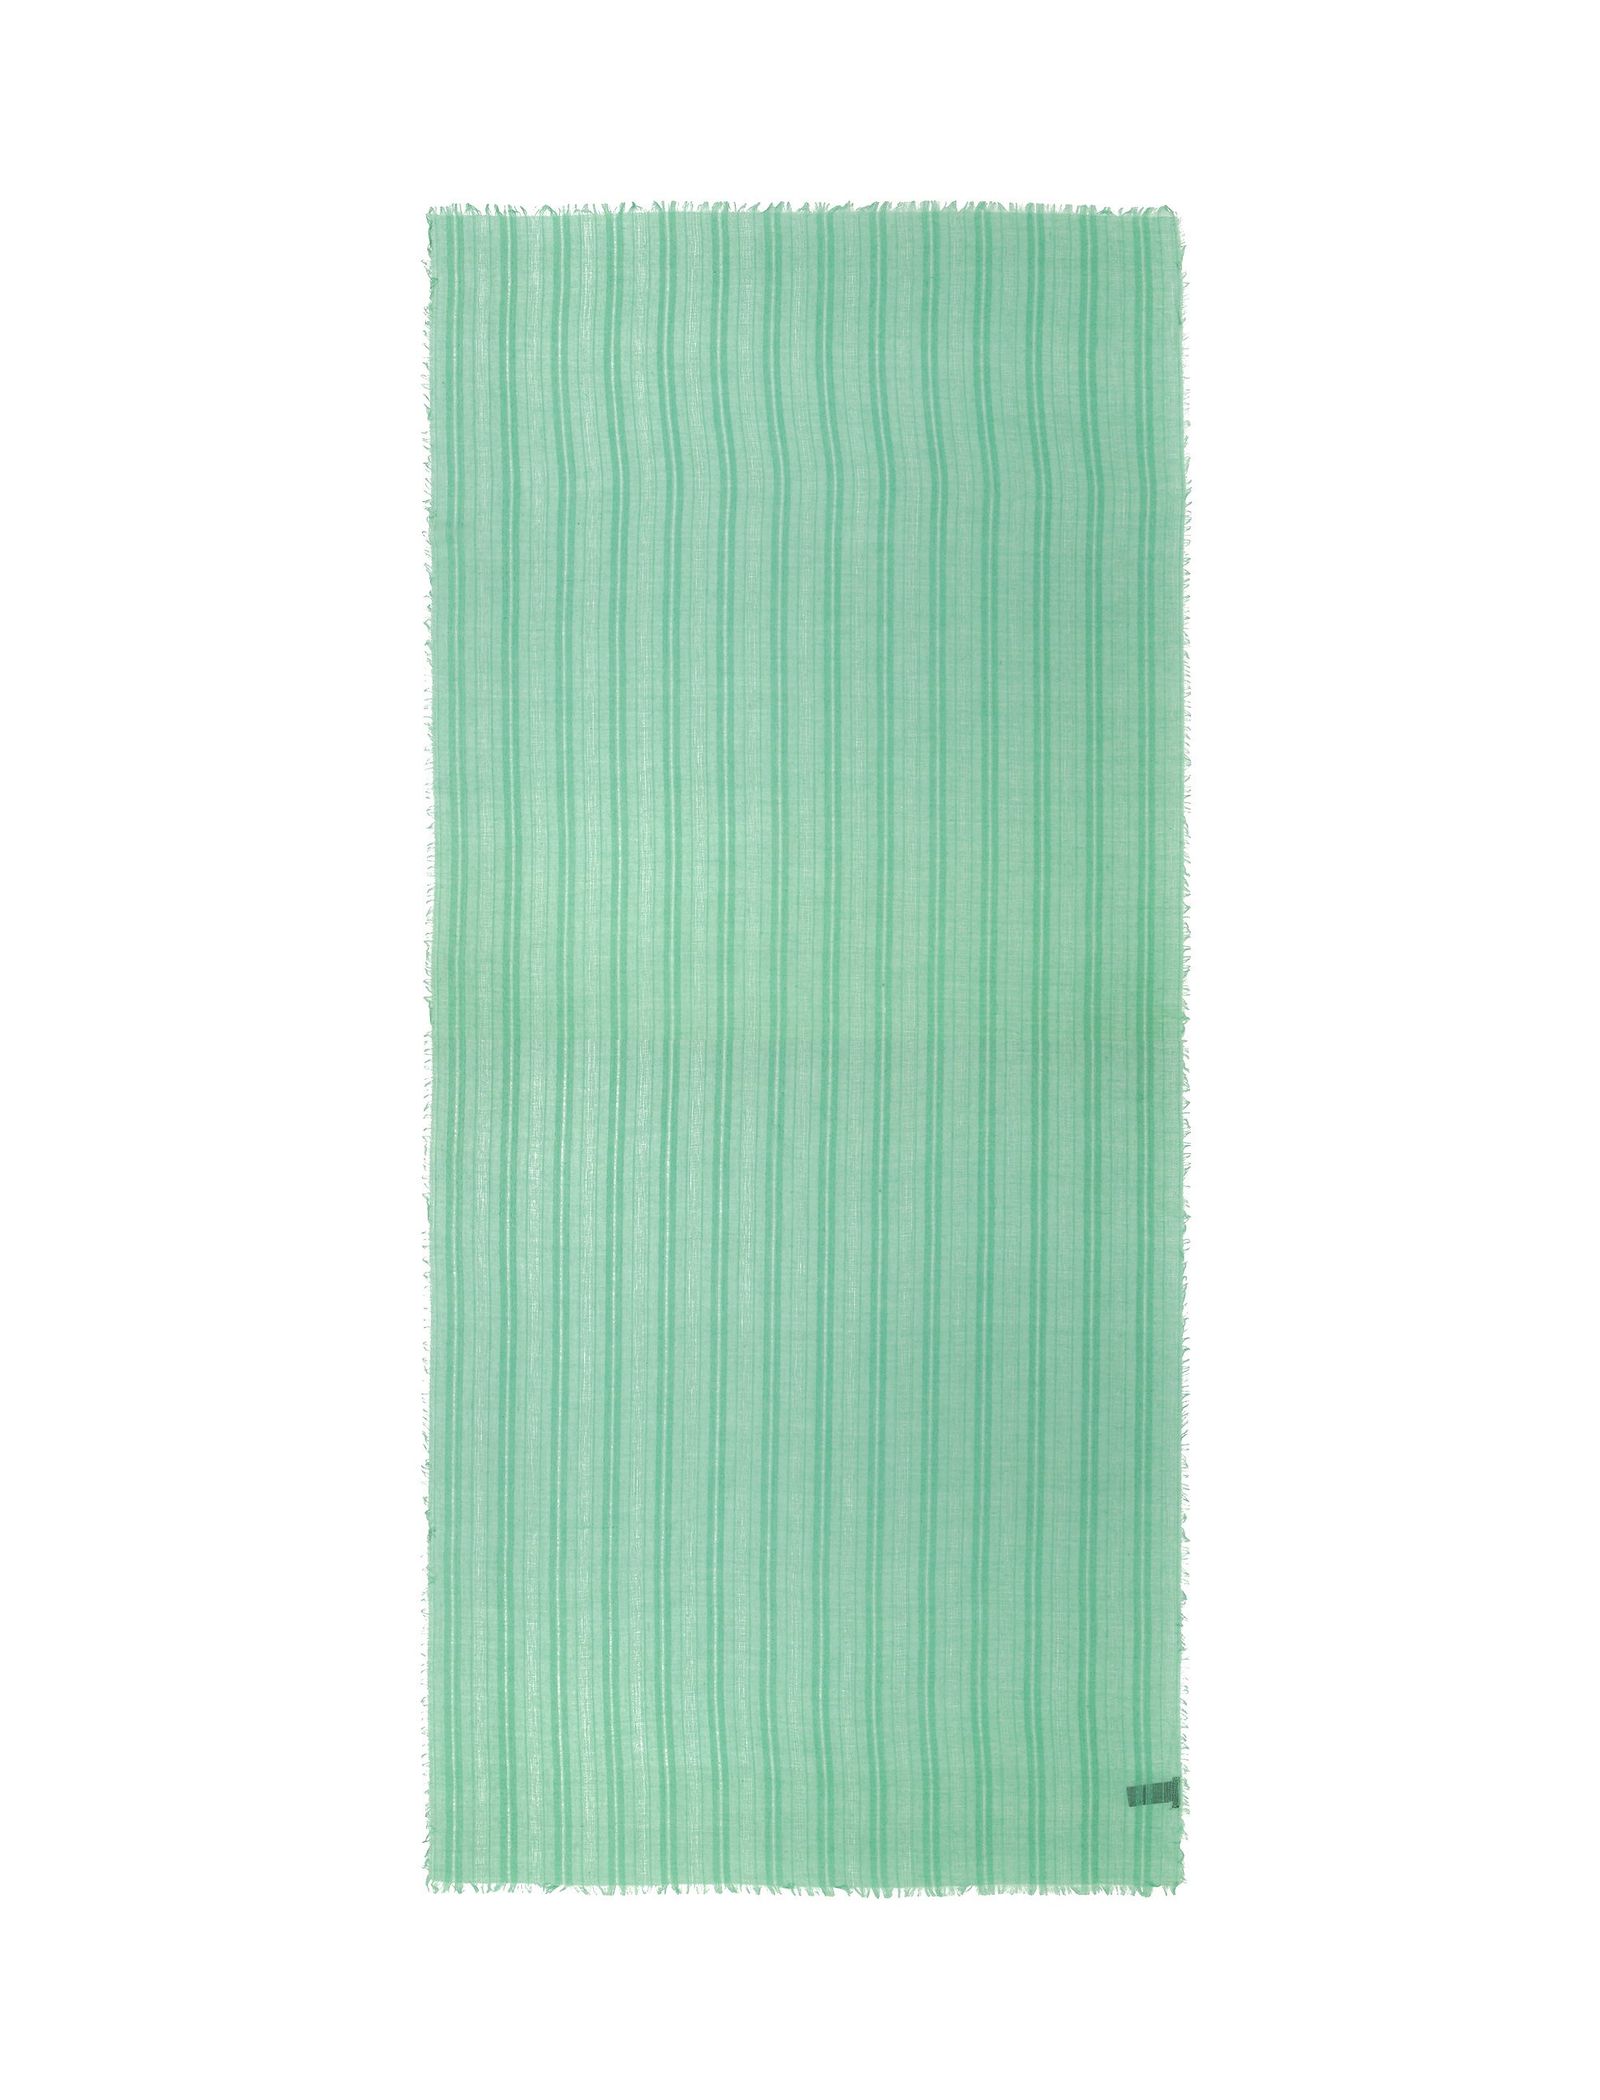 شال ساده زنانه - پارفوا - سبز آبي روشن - 2